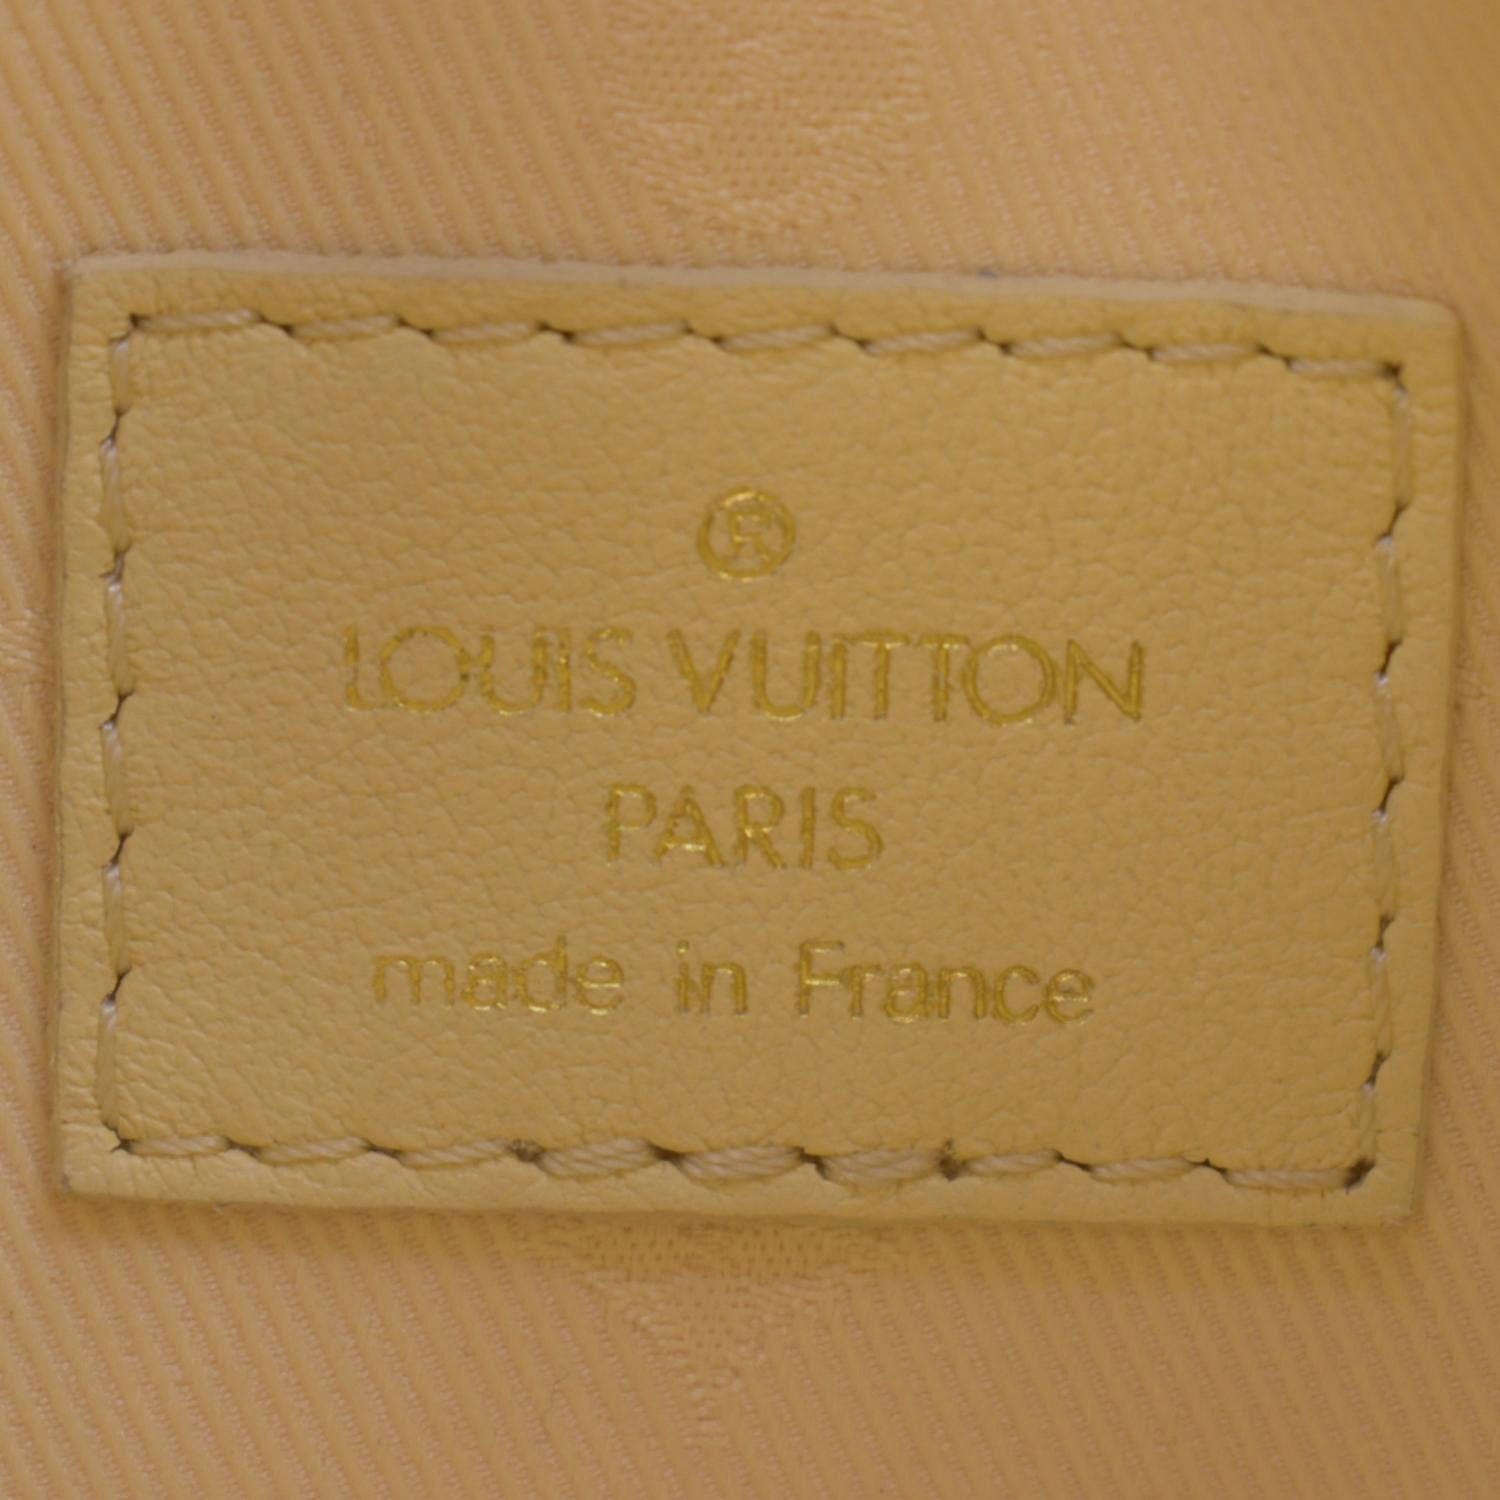 Louis Vuitton Over The Moon Black Calf